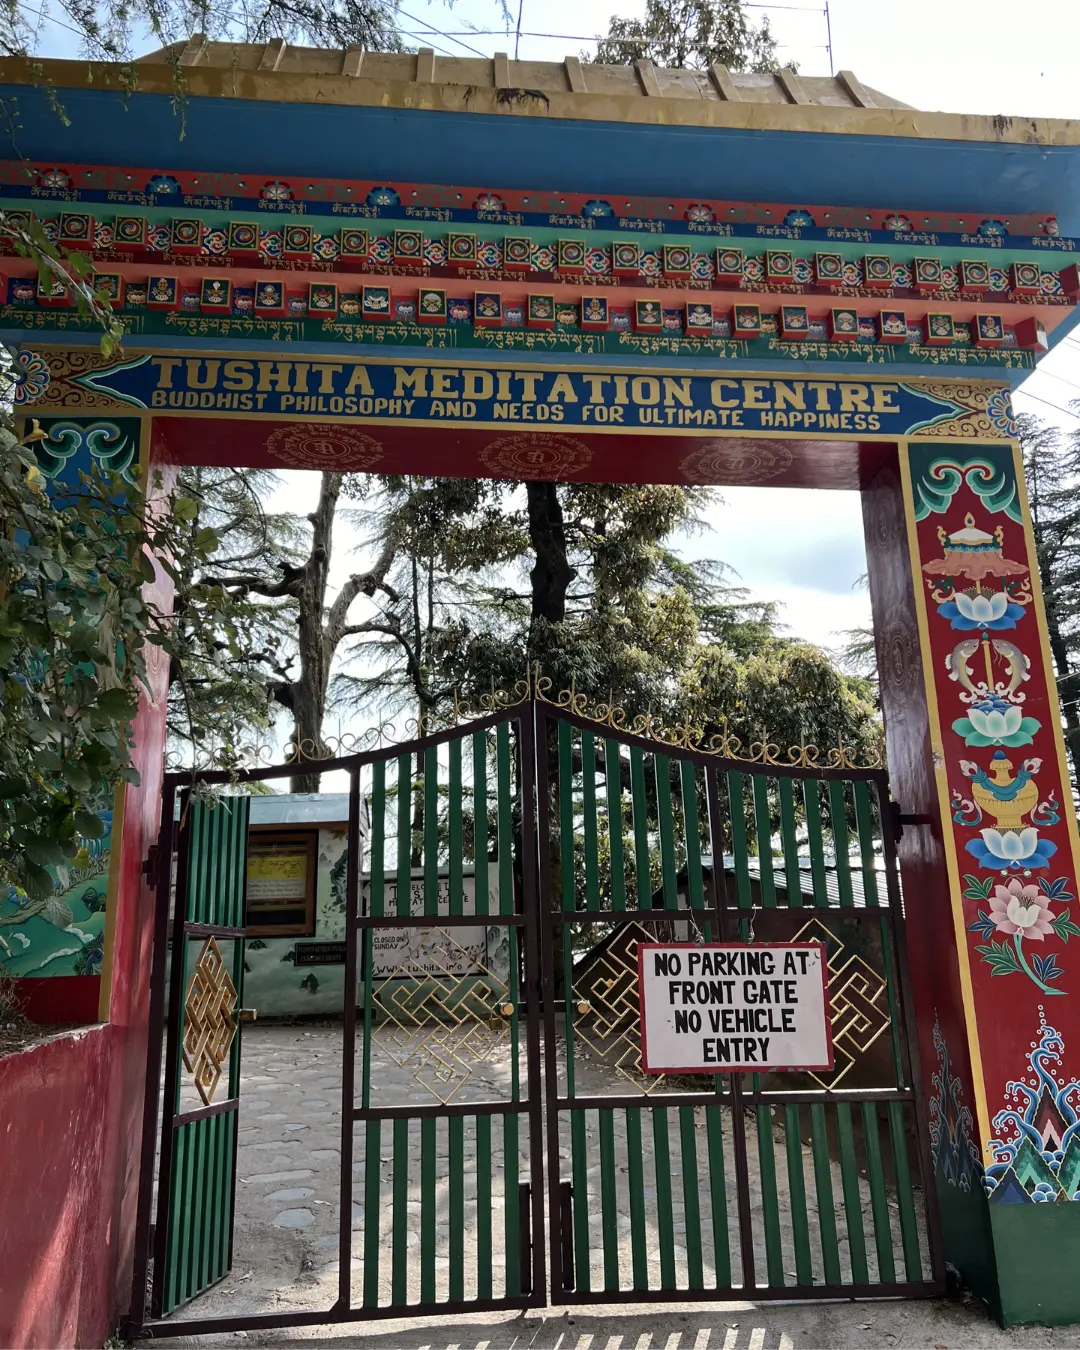 Tushita meditation center